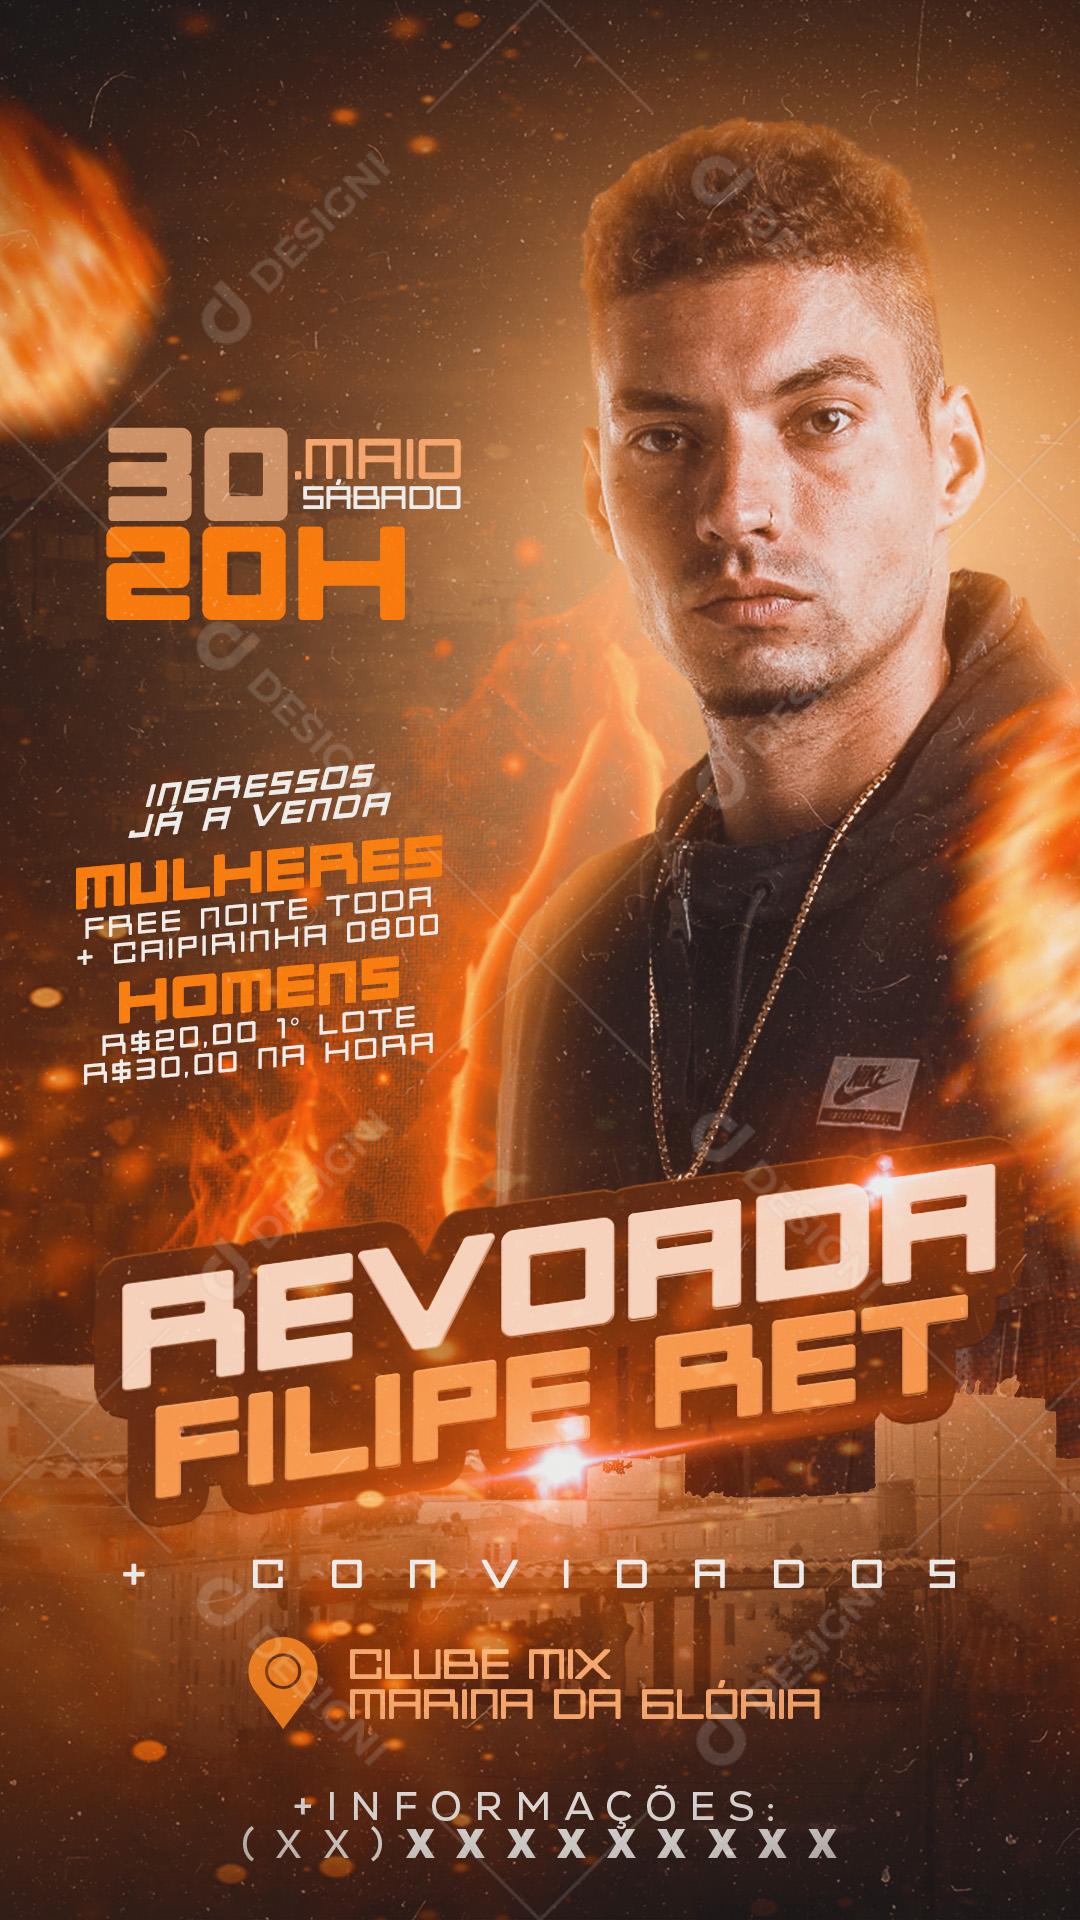 Flyer Revoada Filipe Ret 30 De Maio Social Media PSD Editável